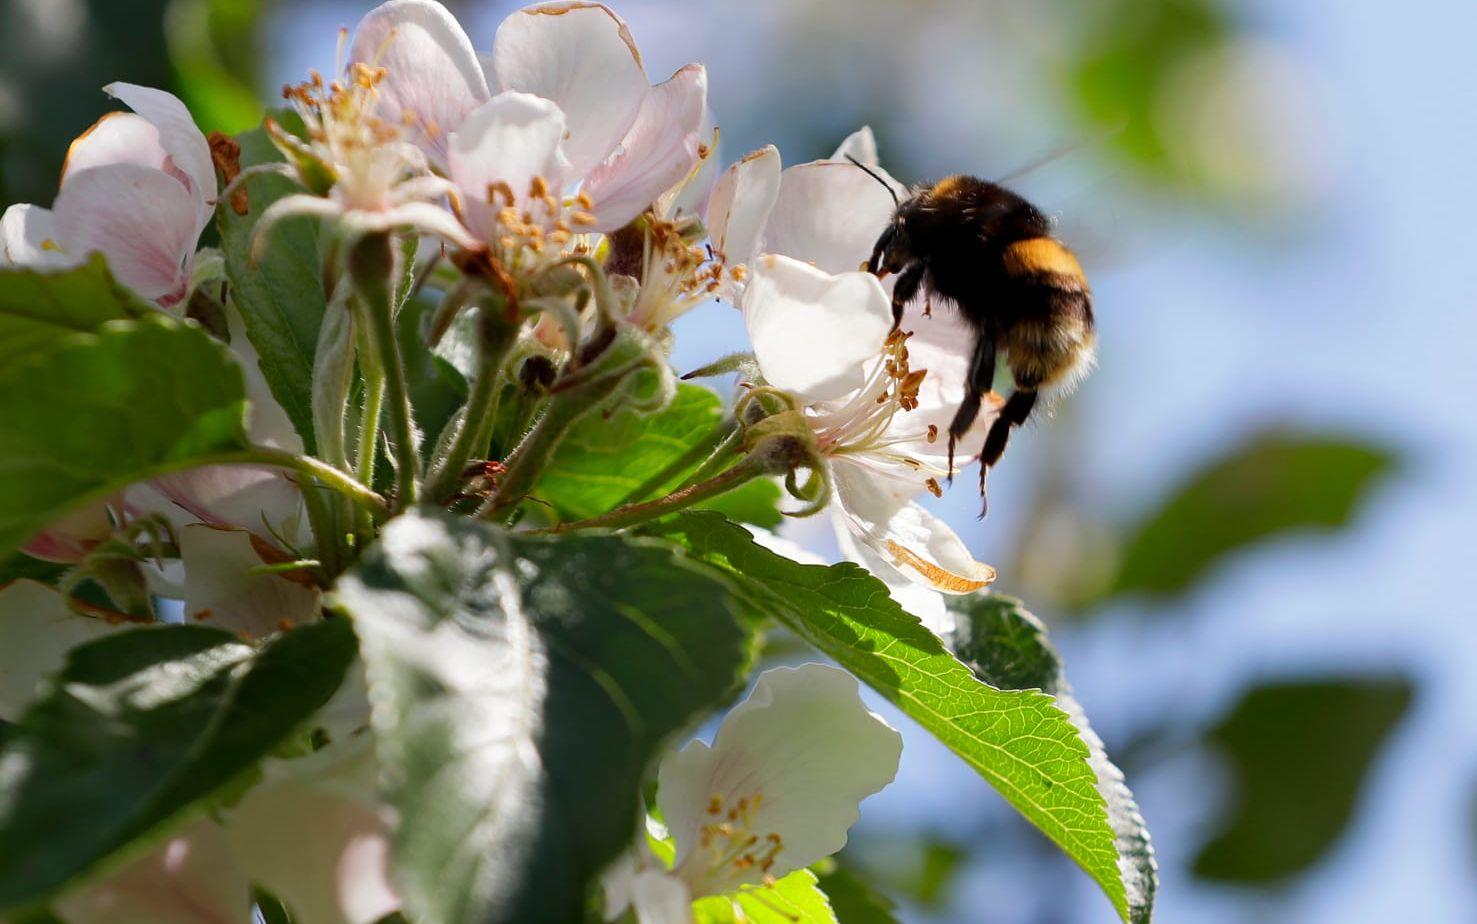 Bin och andra insekter som är viktiga för pollineringen i världen blir allt färre.